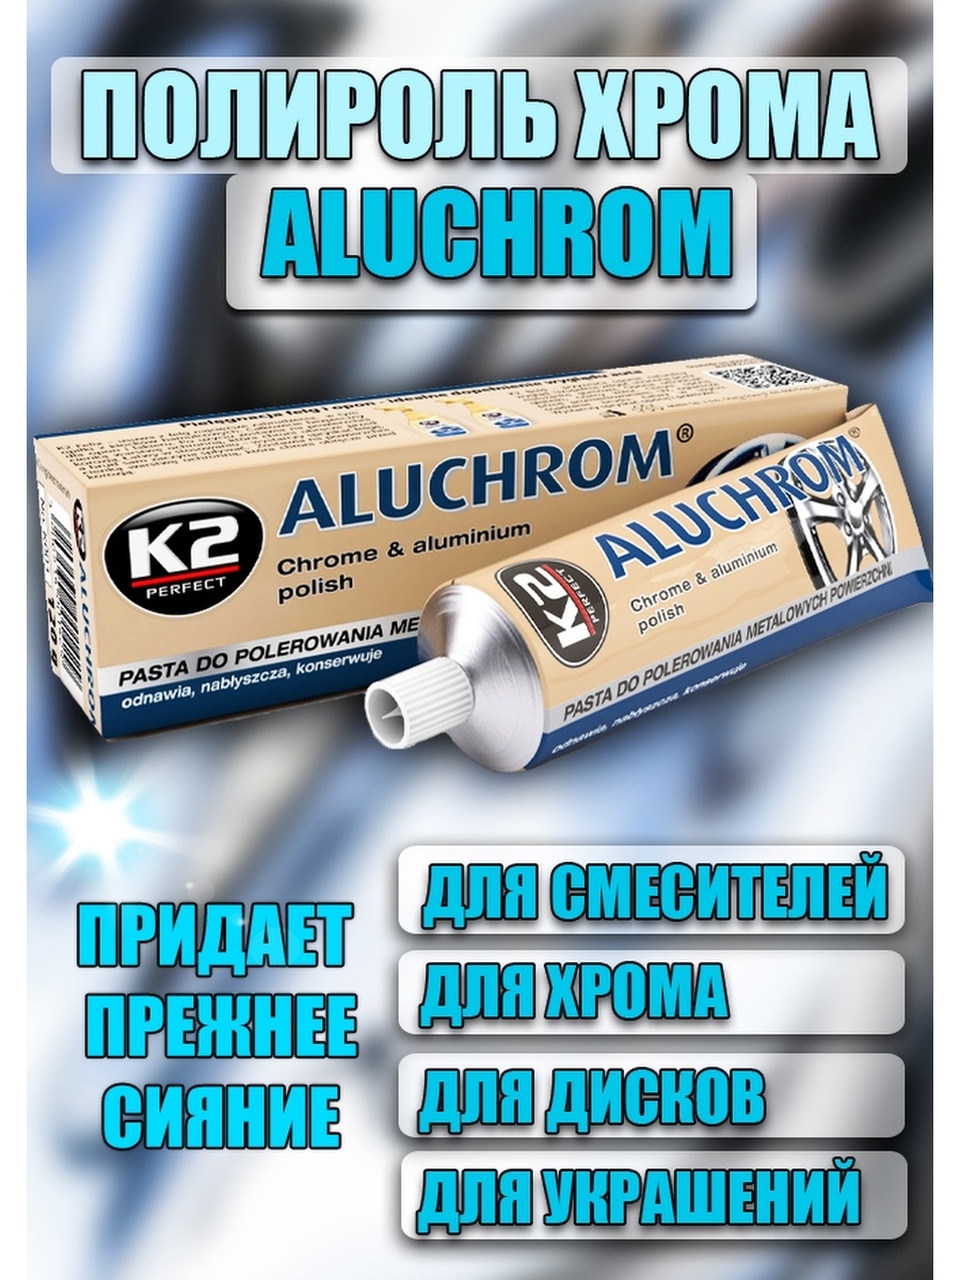 Паста для полировки K2 Aluchrom Алюхром - 420 ₽, заказать онлайн.